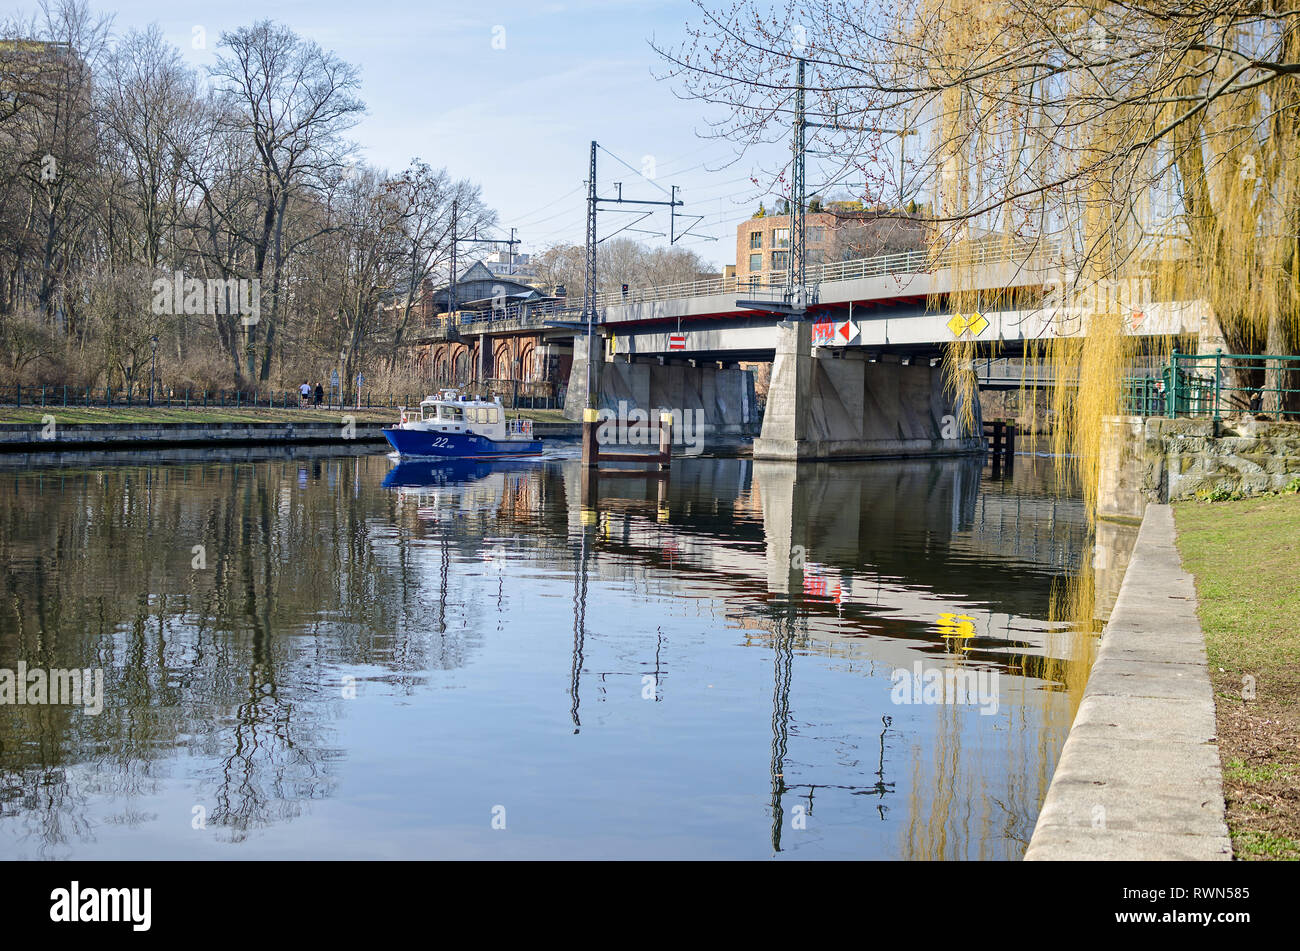 Berlino, Germania - 17 Febbraio 2019: Embankment Bellevue Ufer del fiume Spree con la scatola di acciaio trave ponte ferroviario Bellevue e una barca di polizia. Foto Stock